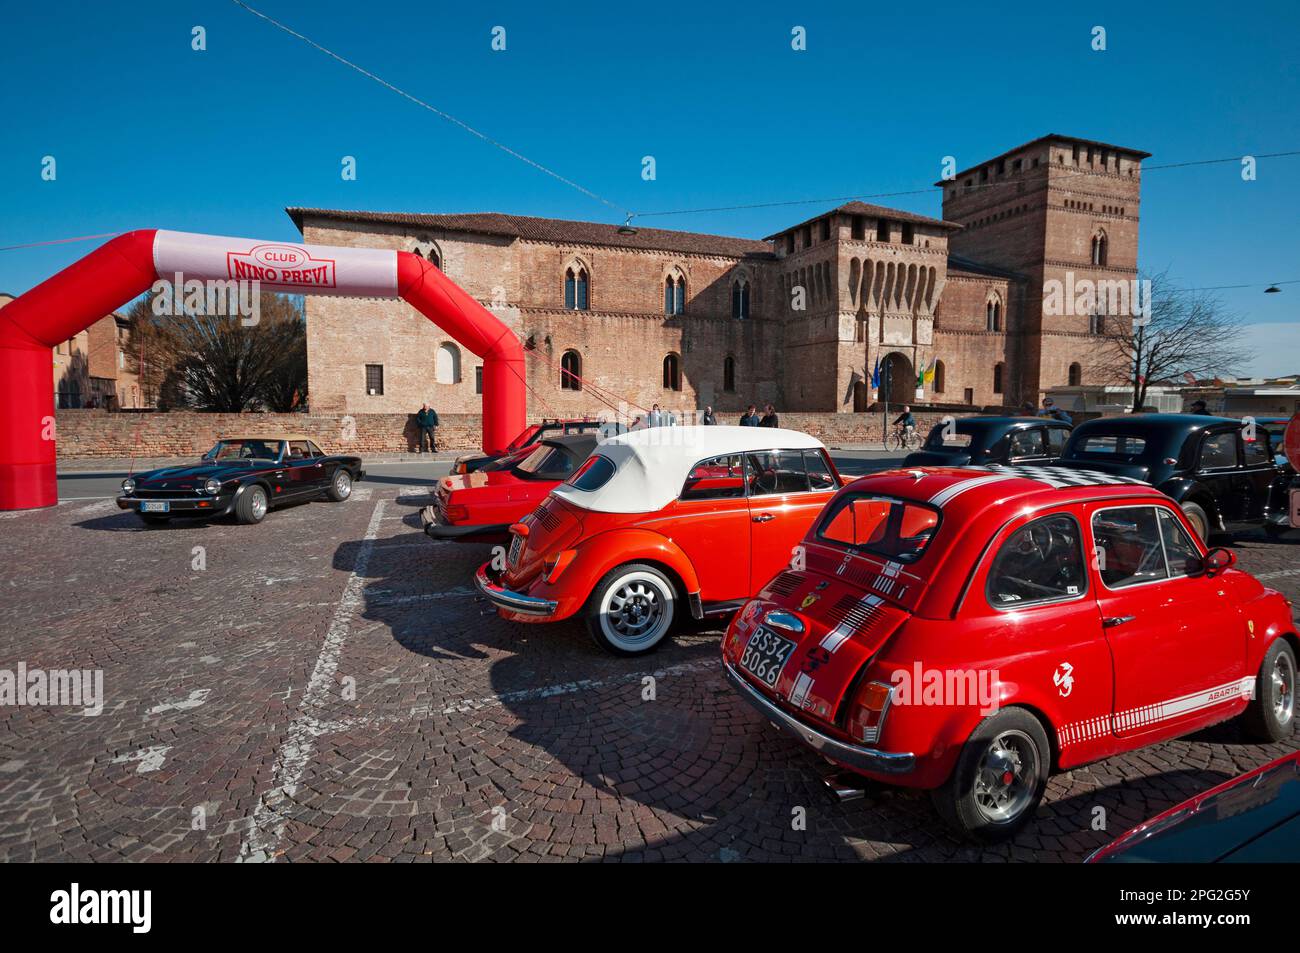 Italie, Lombardie, Pandino, rencontre de voitures anciennes Historique Château de Visconteo Banque D'Images